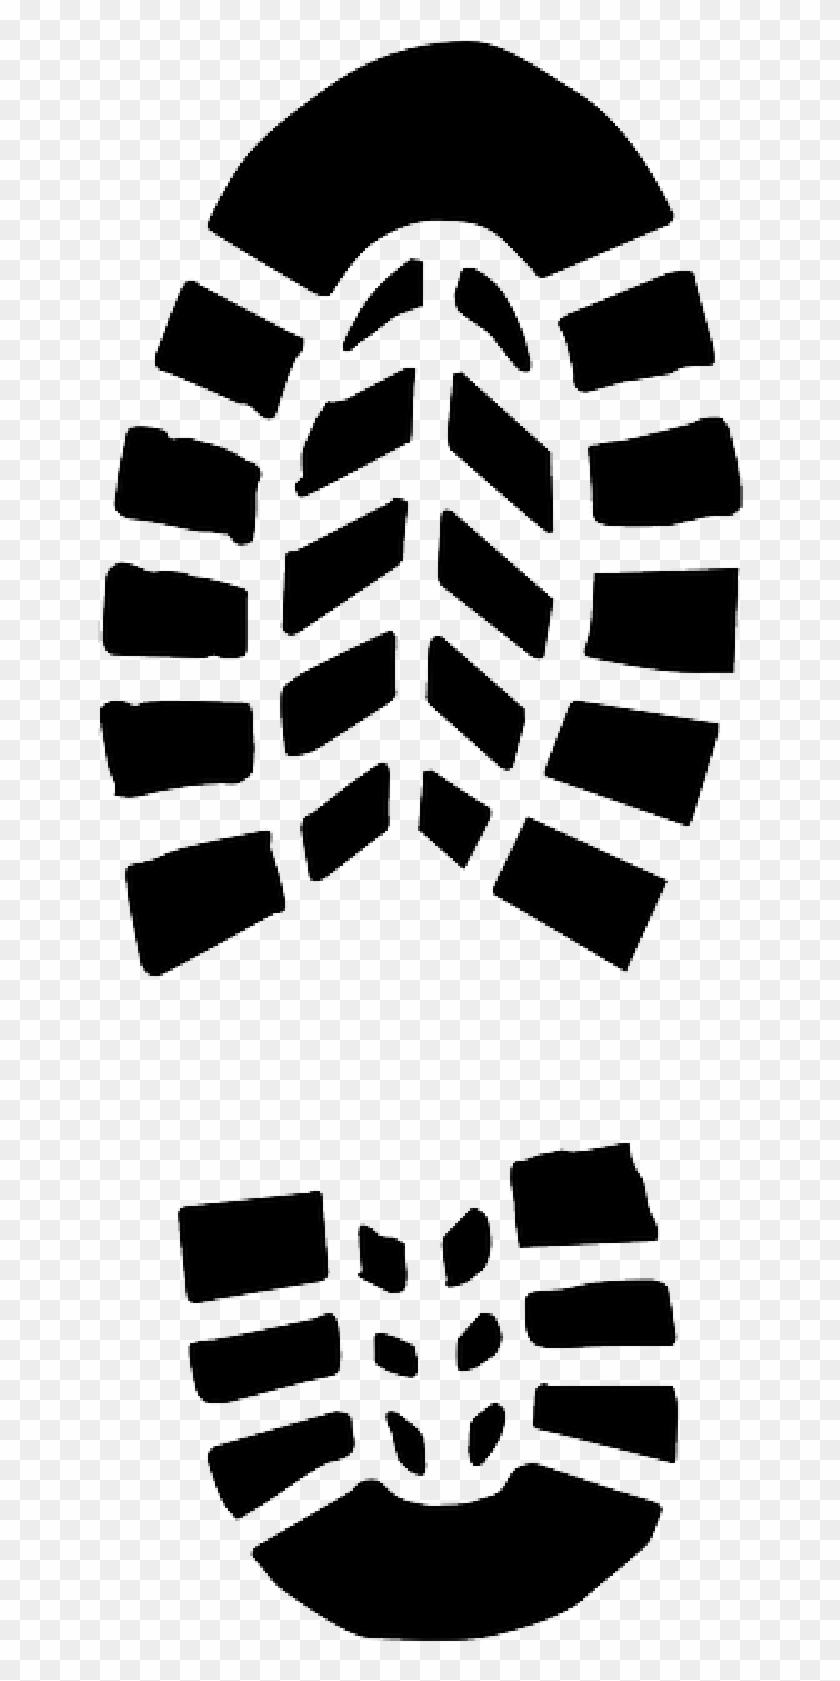 Clipart Shoe Soles - Shoe Print Clip Art #1185354